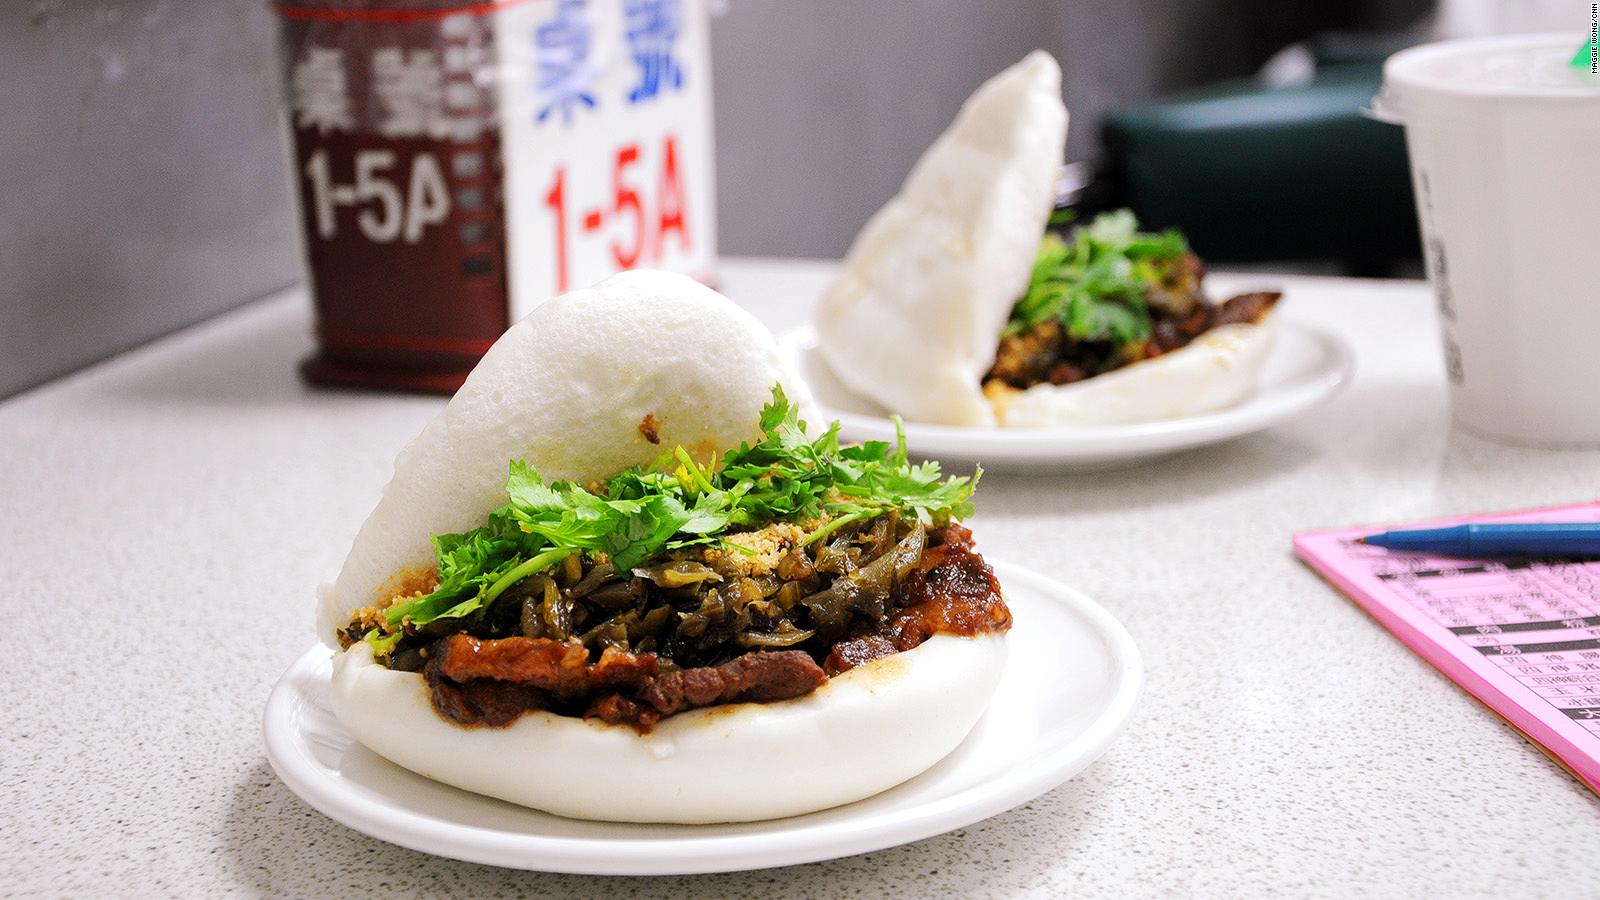 Gua bao: Taiwan's 'hamburger' is taking over the world | CNN Travel